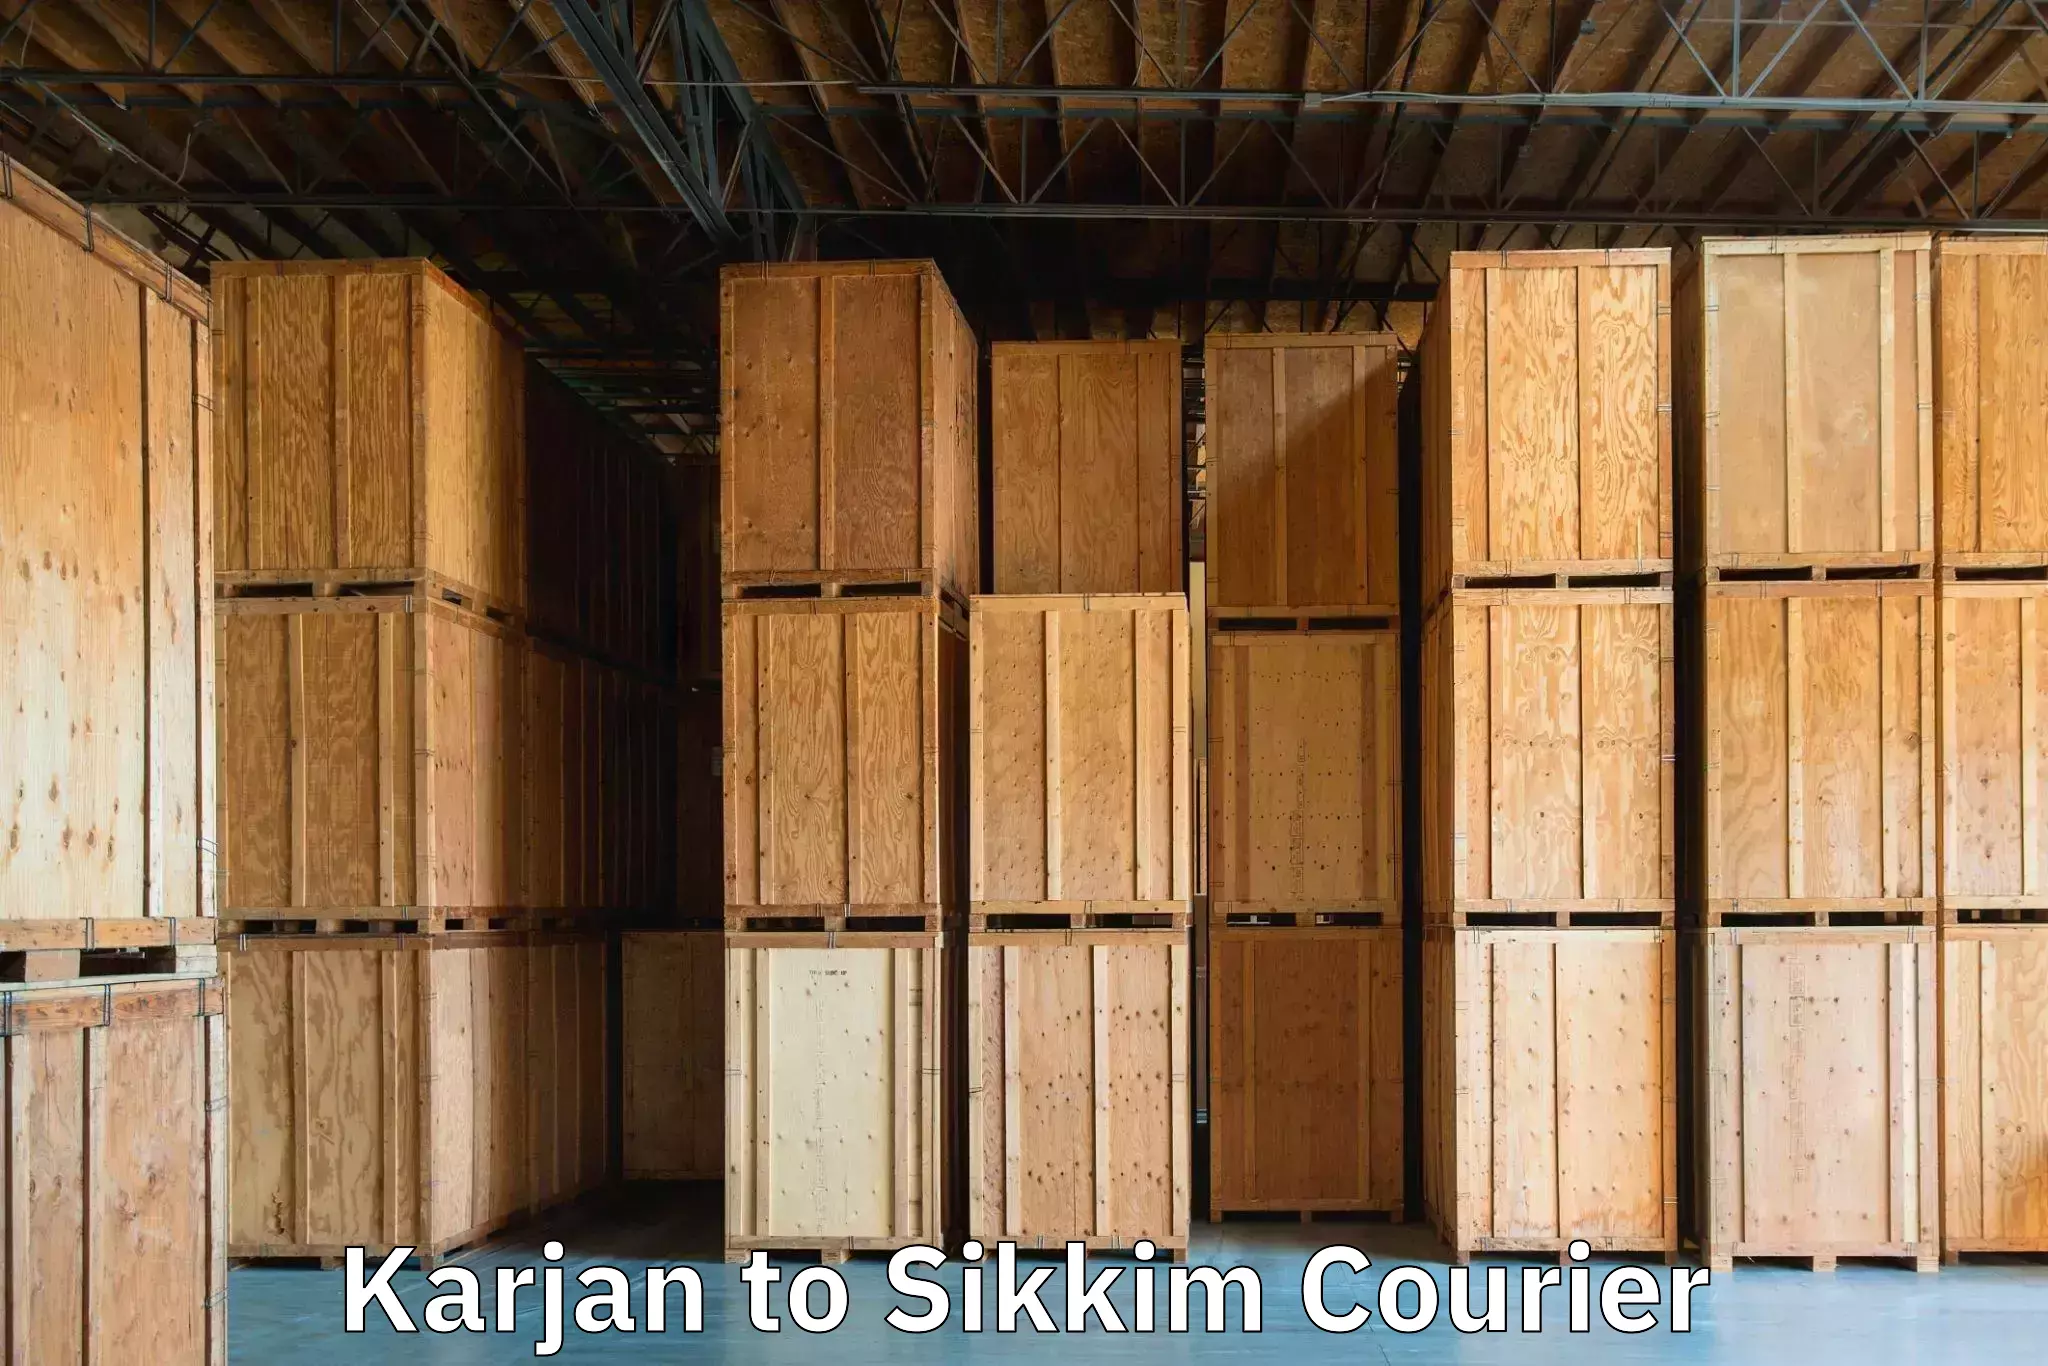 Hassle-free luggage shipping Karjan to Pelling